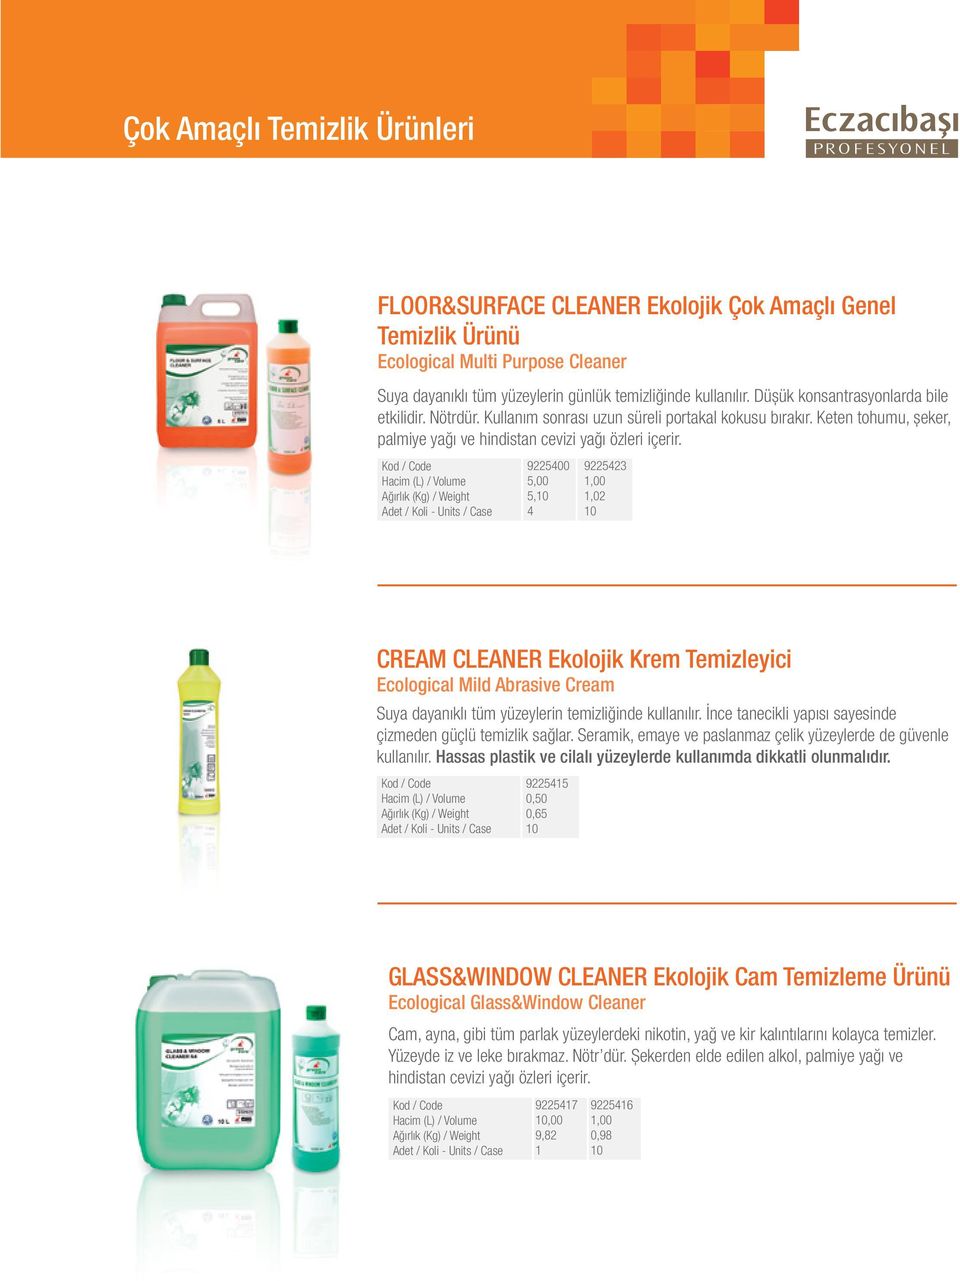 922500 5,0 922523,00,02 0 CREAM CLEANER Ekolojik Krem Temizleyici Ecological Mild Abrasive Cream Suya dayanıklı tüm yüzeylerin temizliğinde kullanılır.